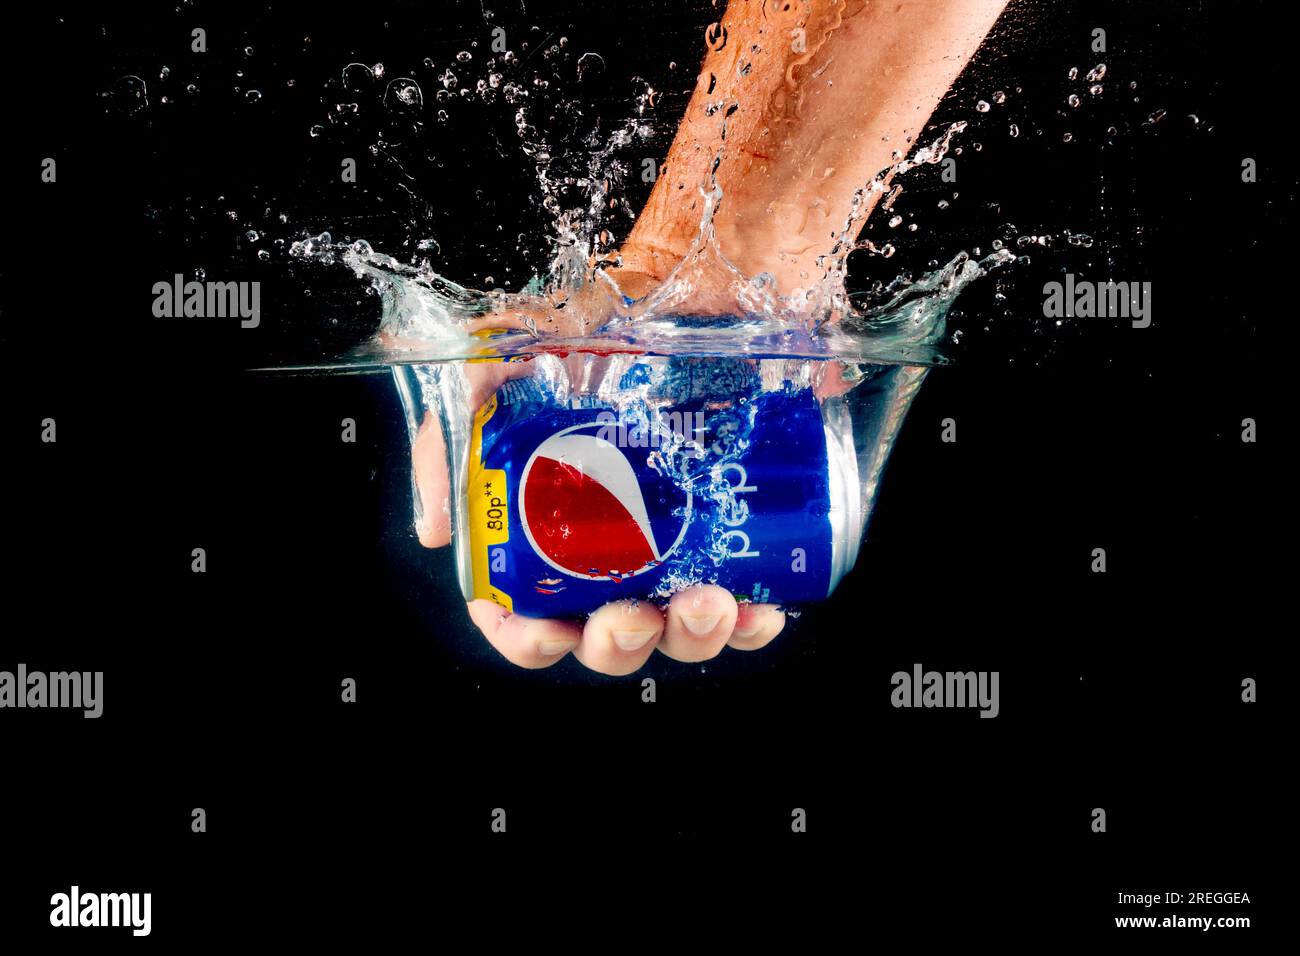 Londra, Regno Unito, 24 luglio 2023: Una lattina di Pepsi tenuta in una mano che spruzza in acqua su uno sfondo nero Foto Stock